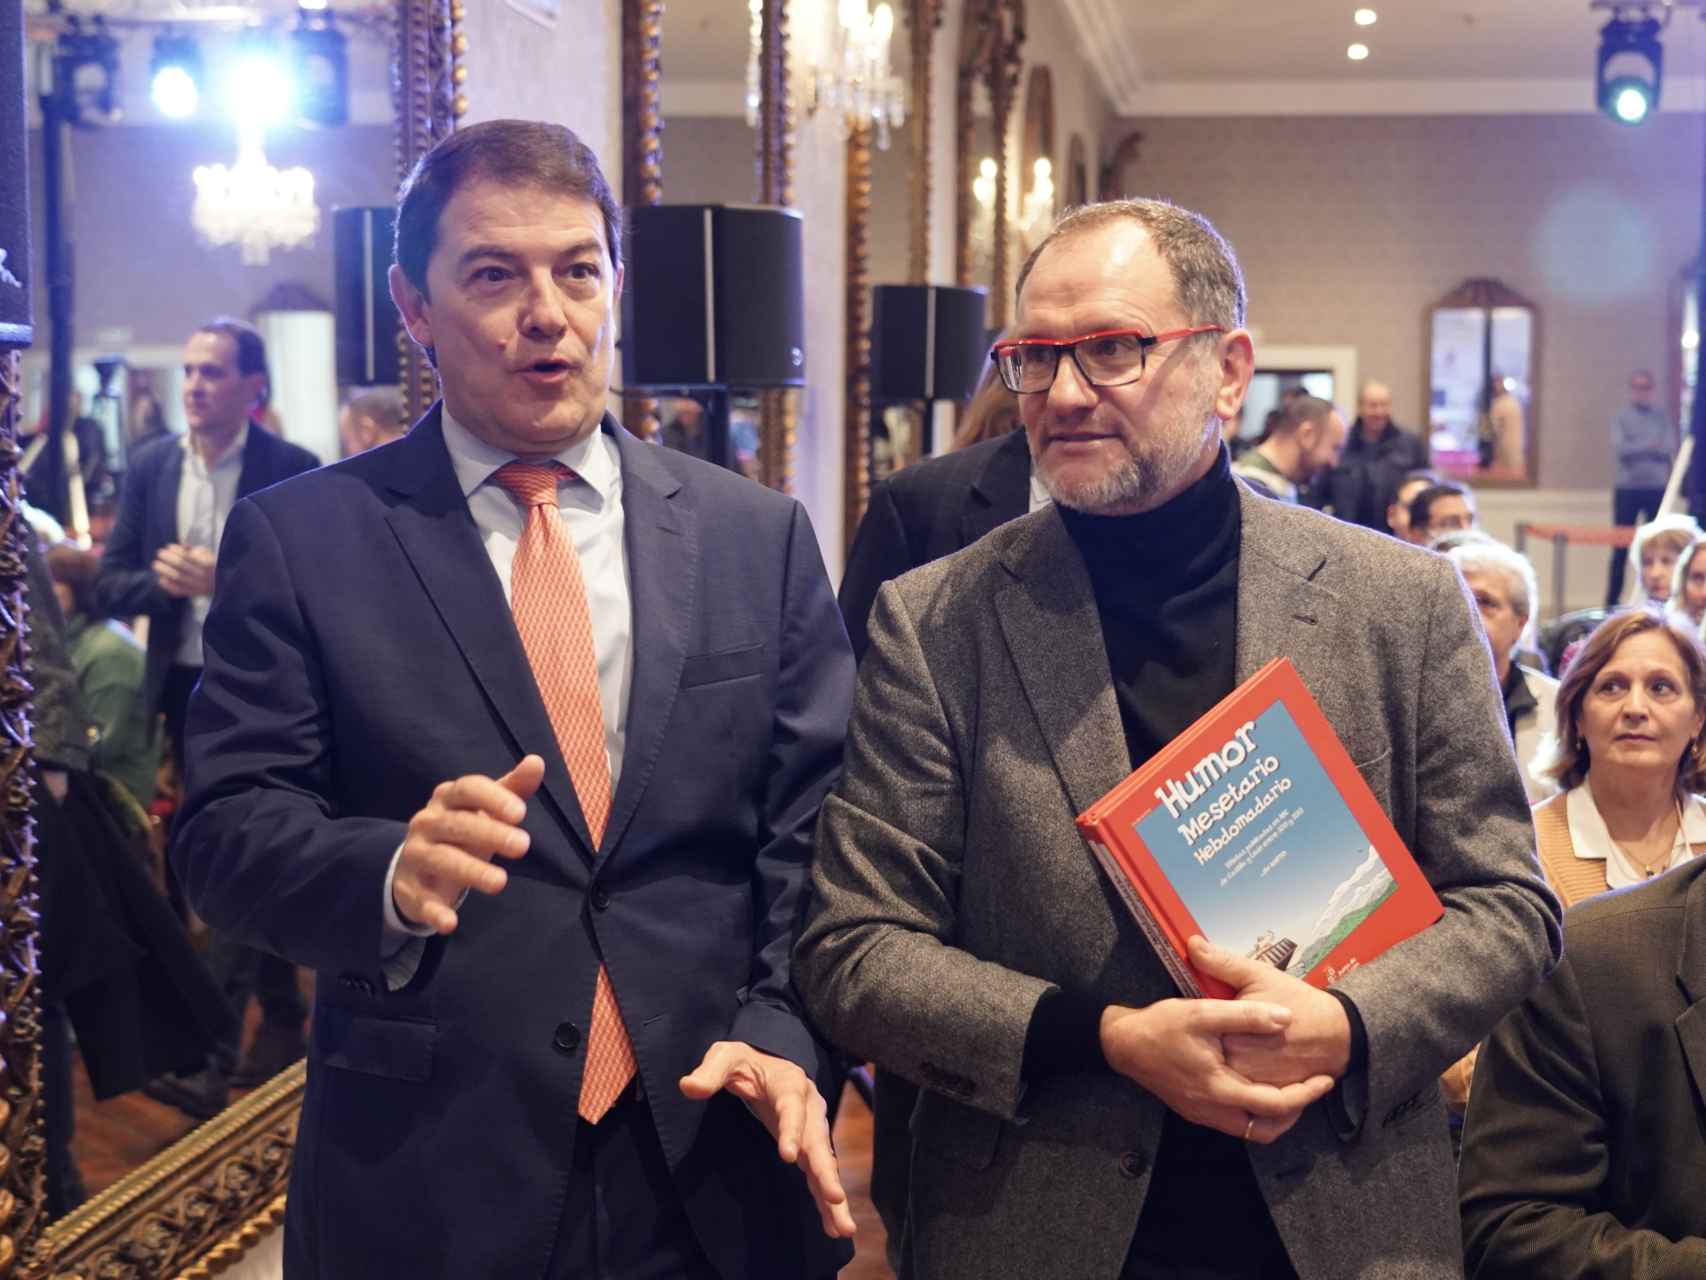 El presidente de la Junta, Alfonso Fernández Mañueco, y el humorista José María Nieto, durante la presentación del libro del segundo, este miércoles.